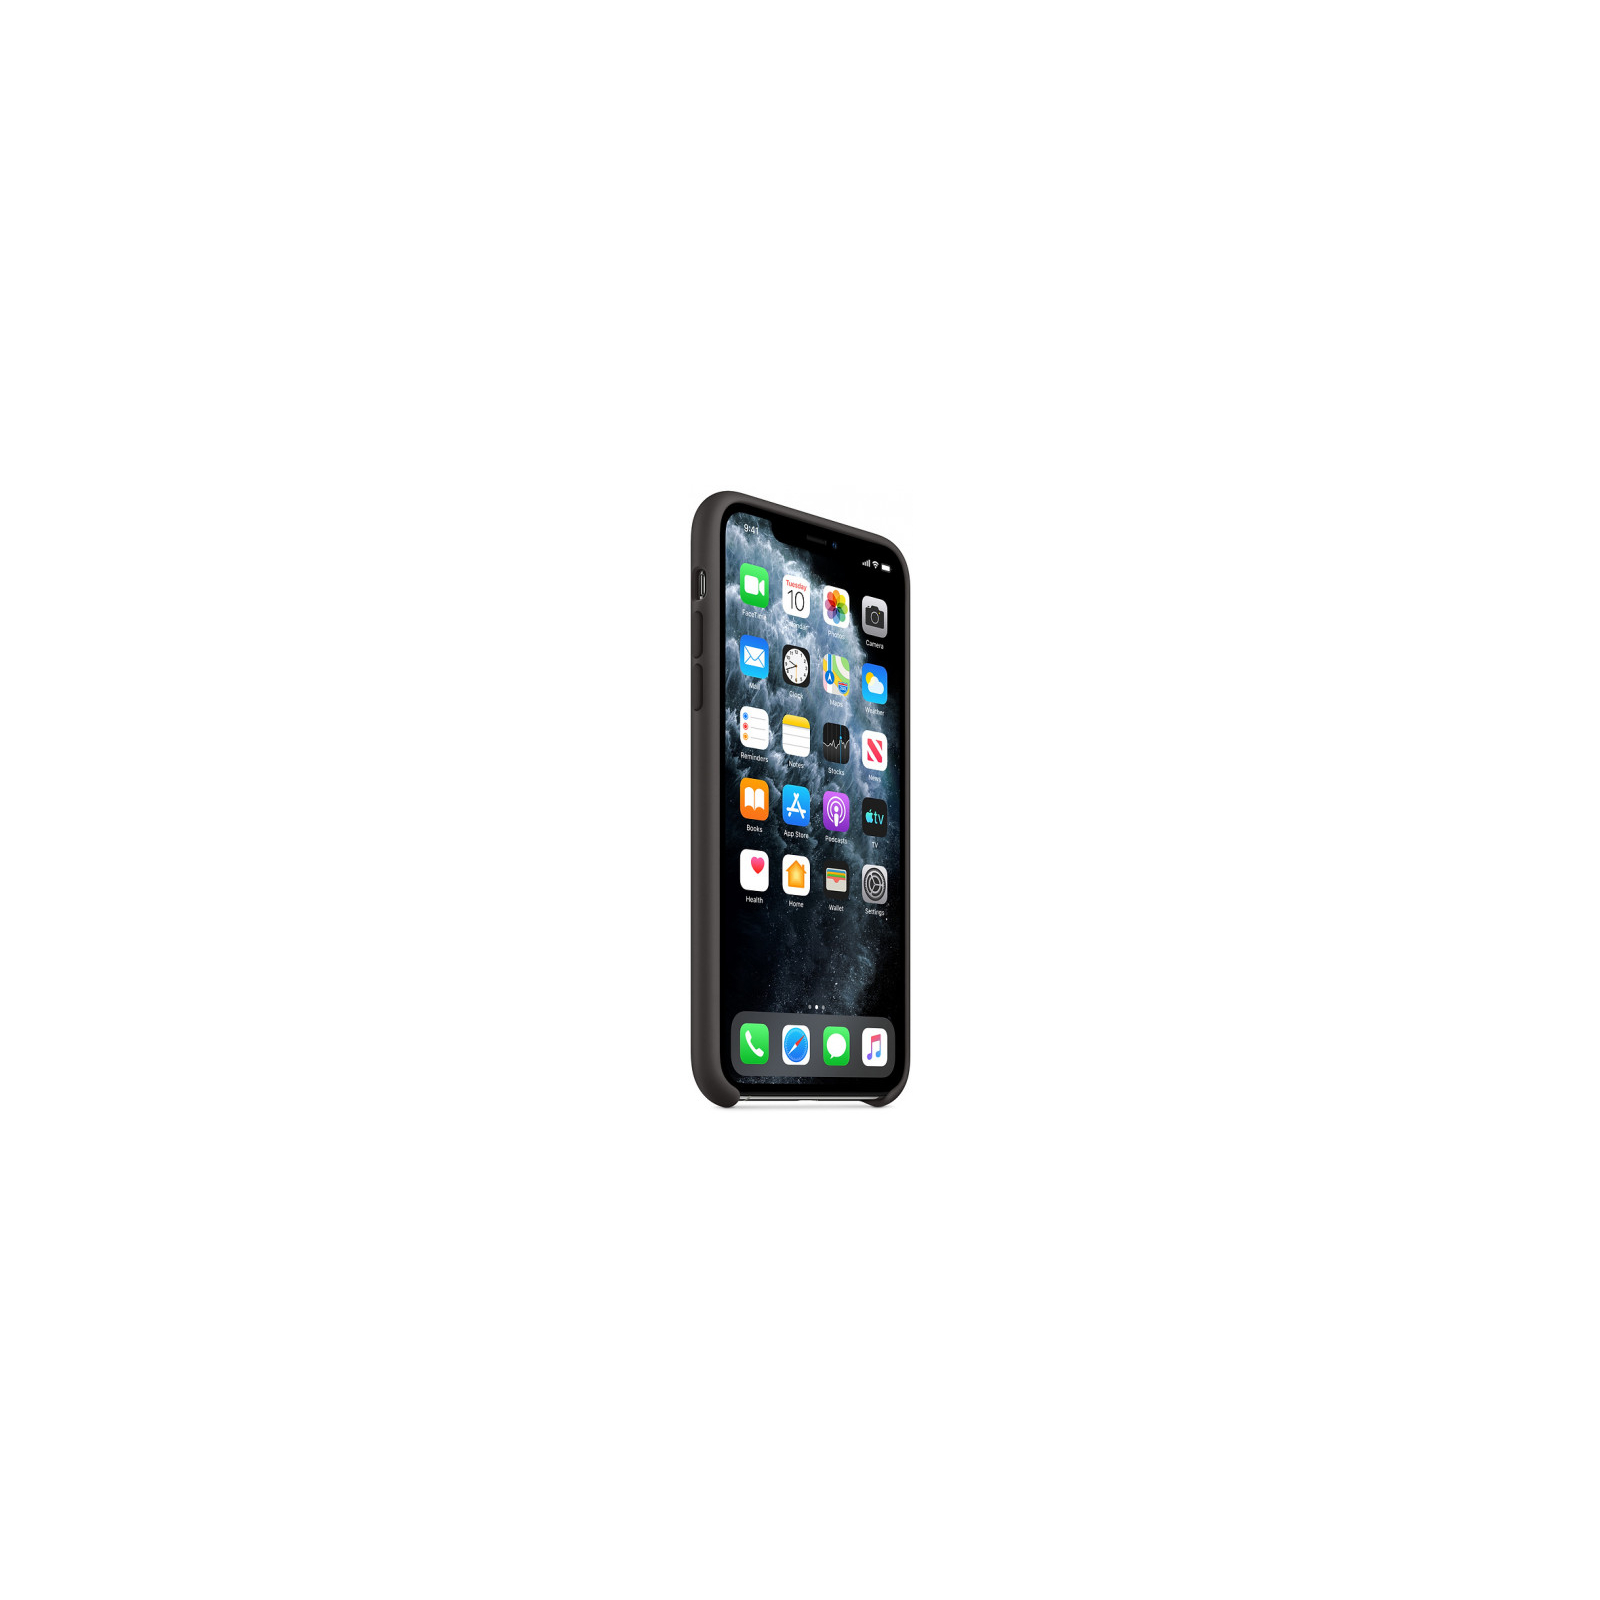 Чехол для мобильного телефона Apple iPhone 11 Pro Max Silicone Case - Black (MX002ZM/A) изображение 5